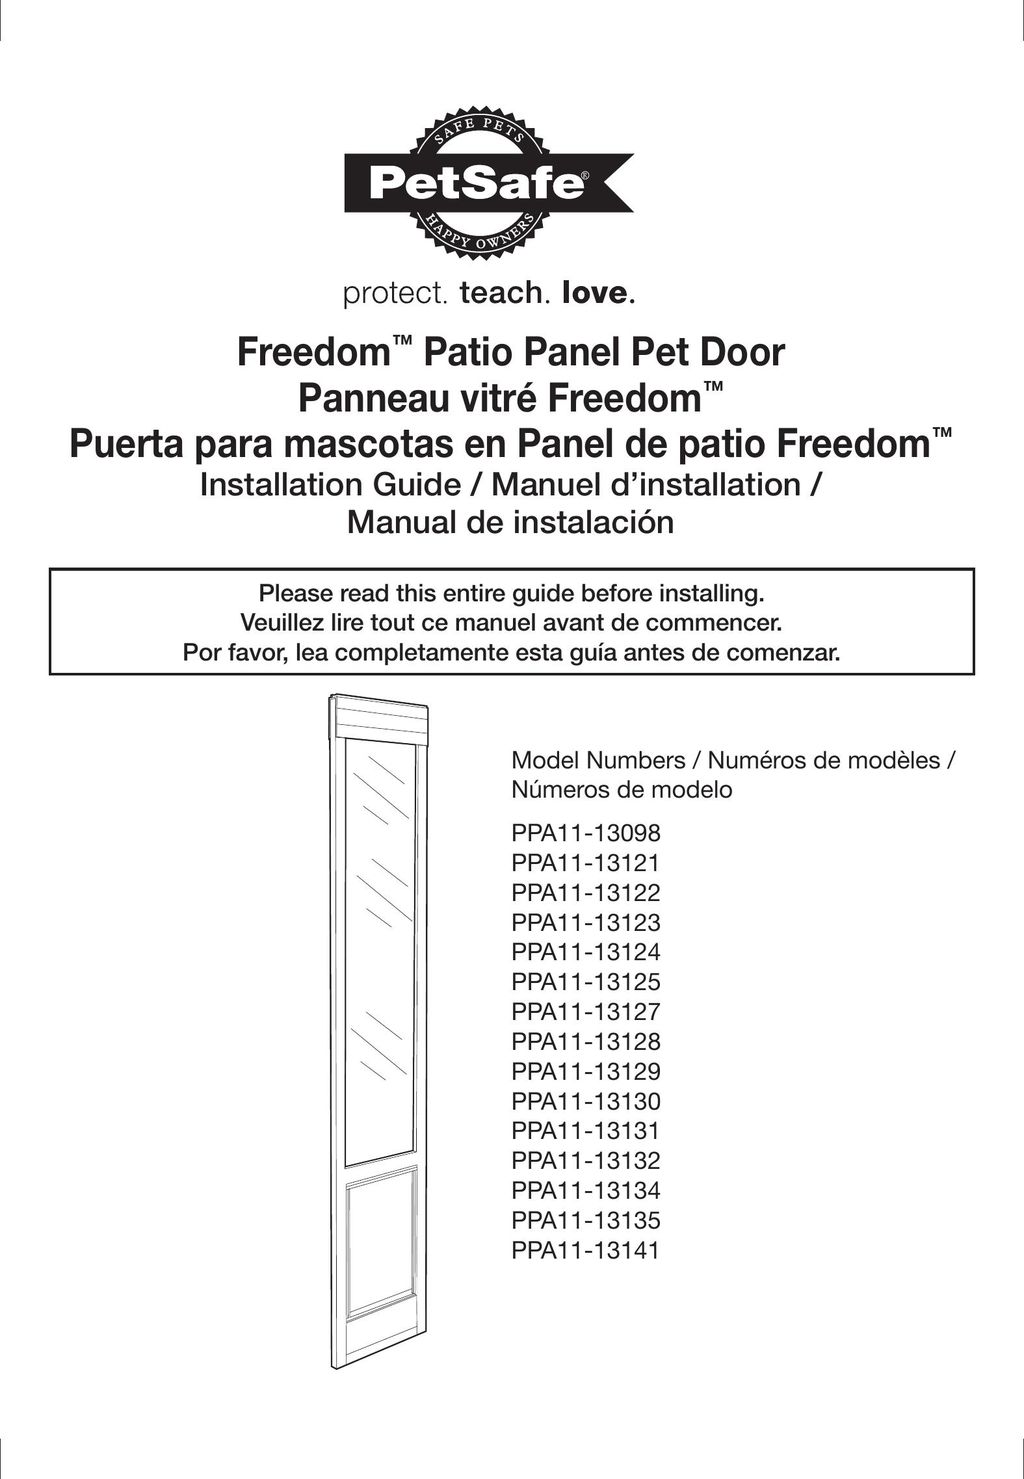 Petsafe PPA11-13135 Door User Manual